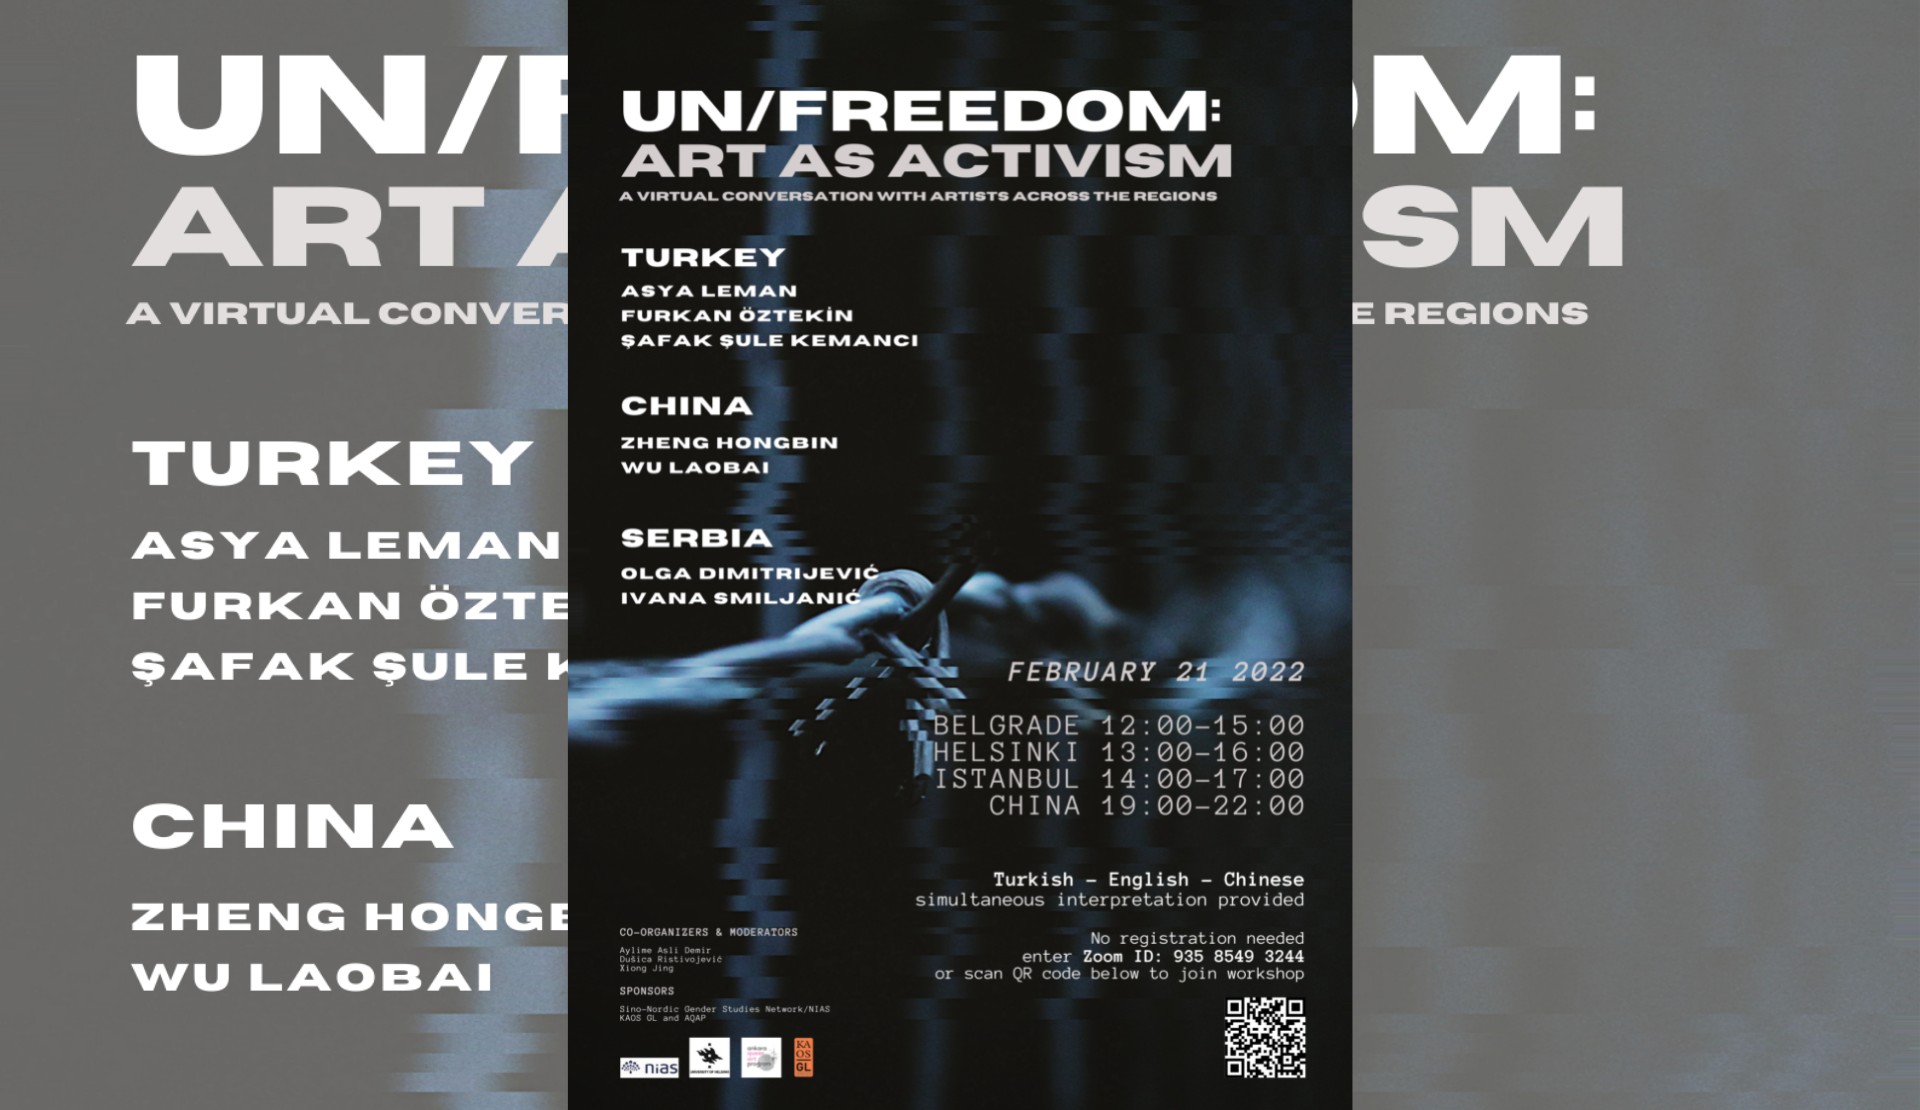 Çin, Sırbistan ve Türkiye’den sanatçılarla aktivizm olarak sanat | Kaos GL - LGBTİ+ Haber Portalı Haber